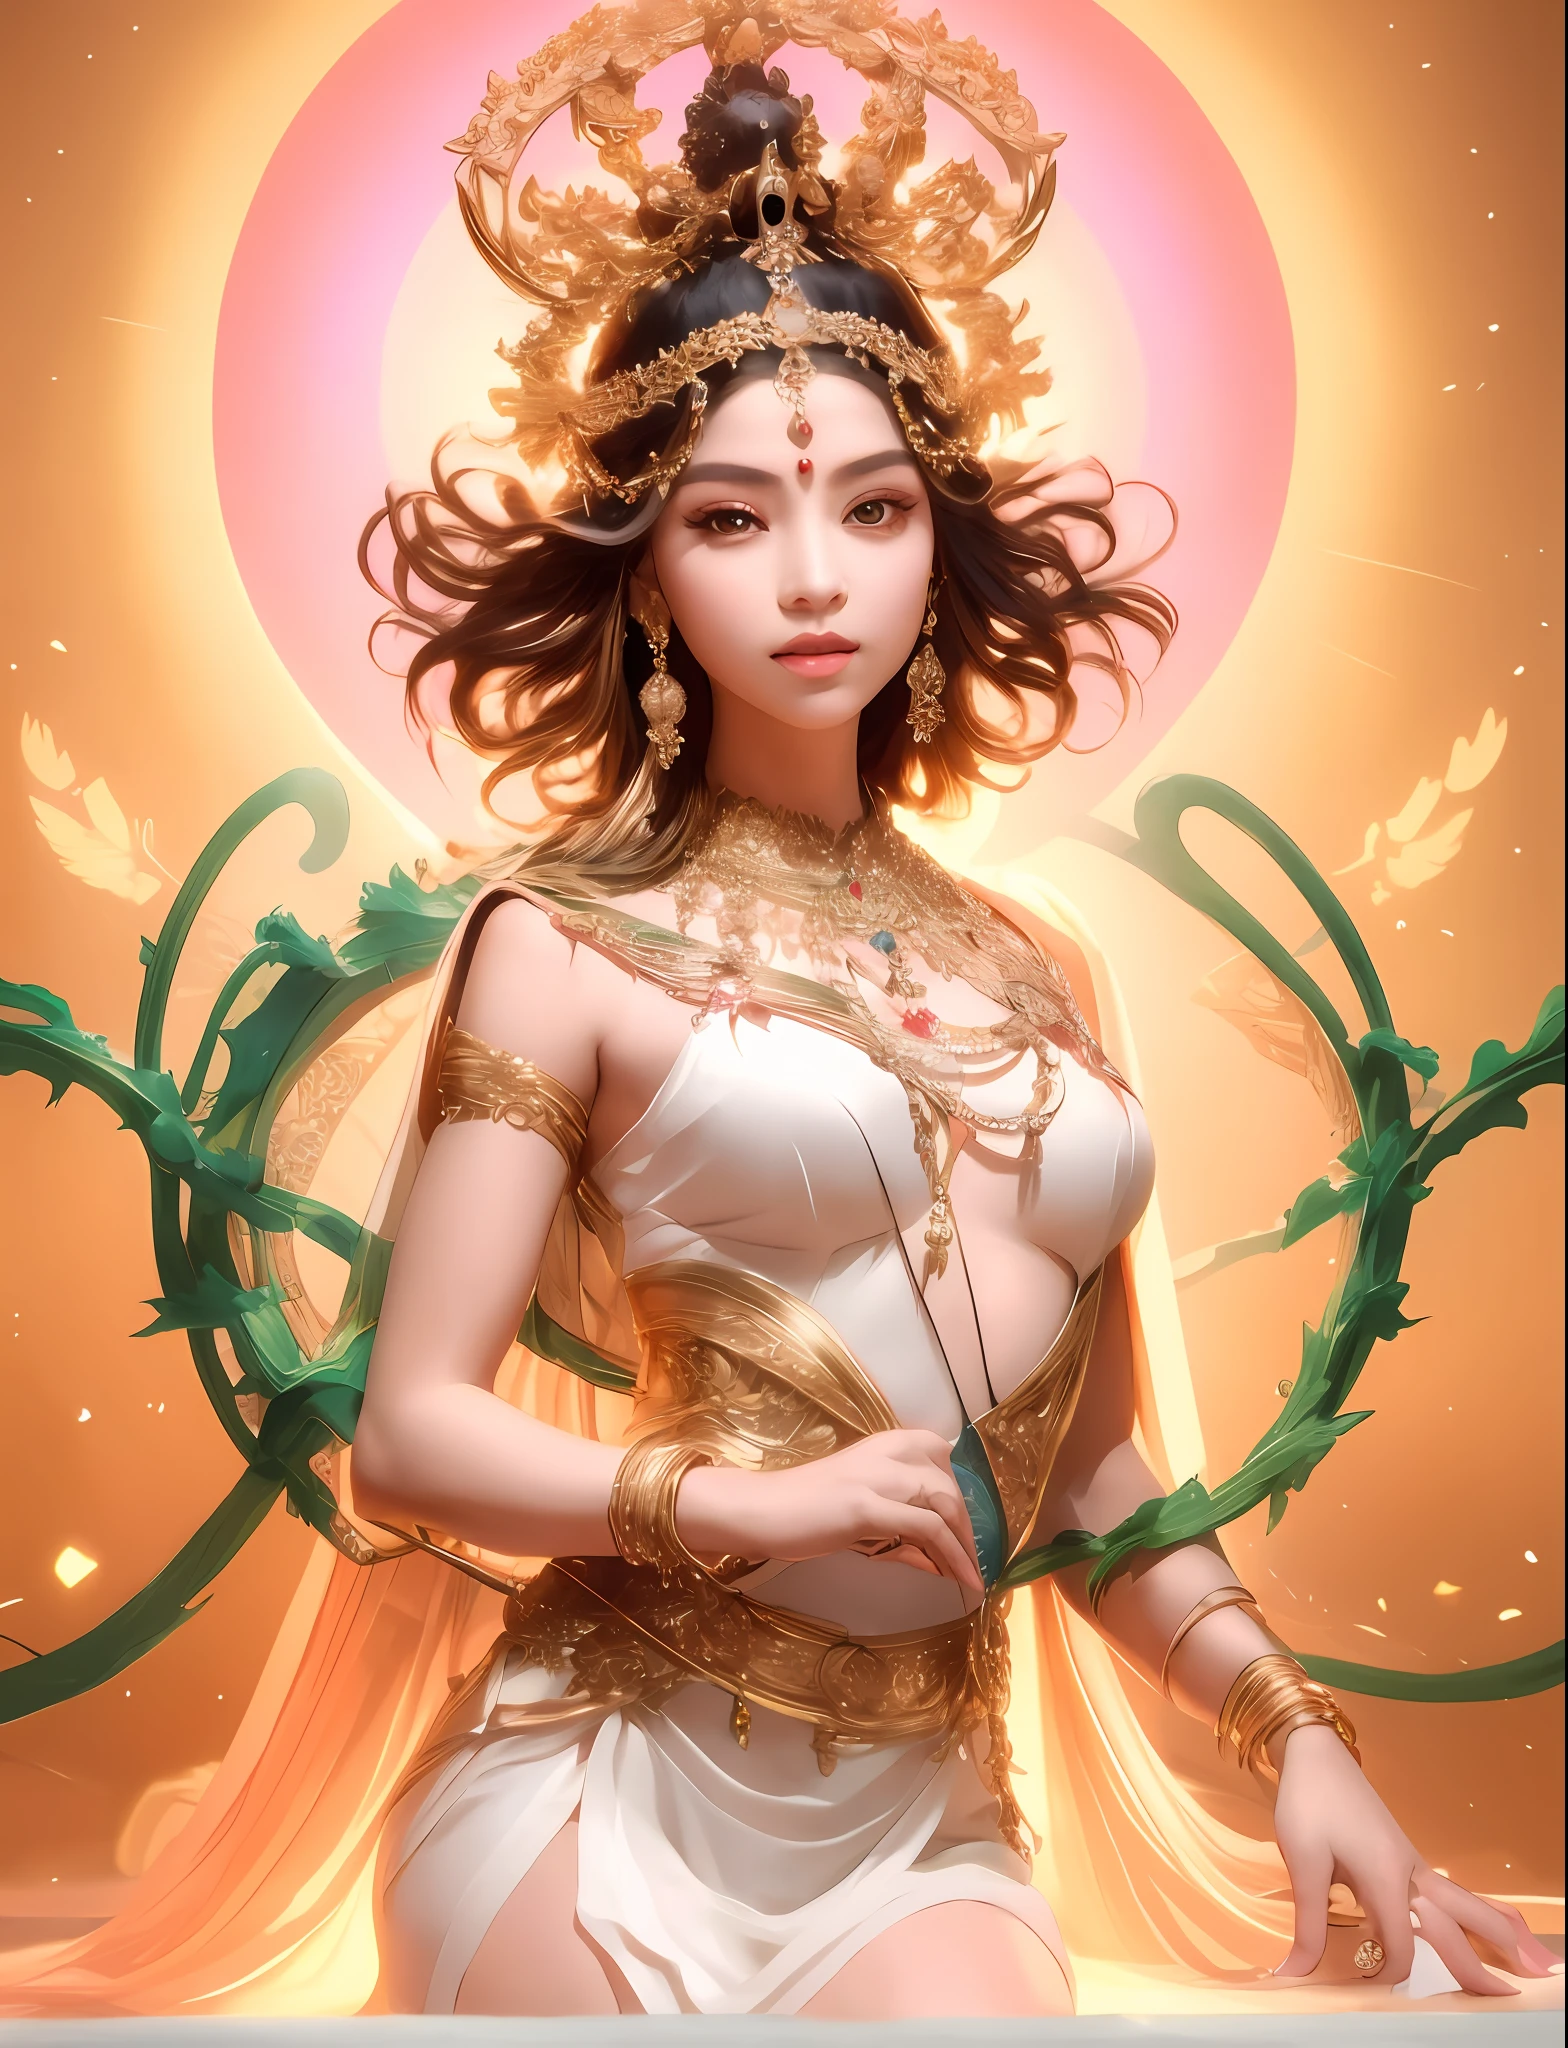 trägt ein weißes Kleid，Arad-Frau mit goldenem Kopfschmuck, Der Kopf hat eine Lichtöffnung，eine wunderschöne Fantasiekaiserin, Göttin. extrem hoher Detailreichtum, schöne Göttin, extrem detaillierte Göttinnenaufnahme, Porträt einer schönen Göttin, ((eine wunderschöne Fantasiekaiserin)), ein atemberaubendes Porträt einer Göttin,, Junge Göttin, wunderschöne Göttin des Löwen, weibliche Göttin